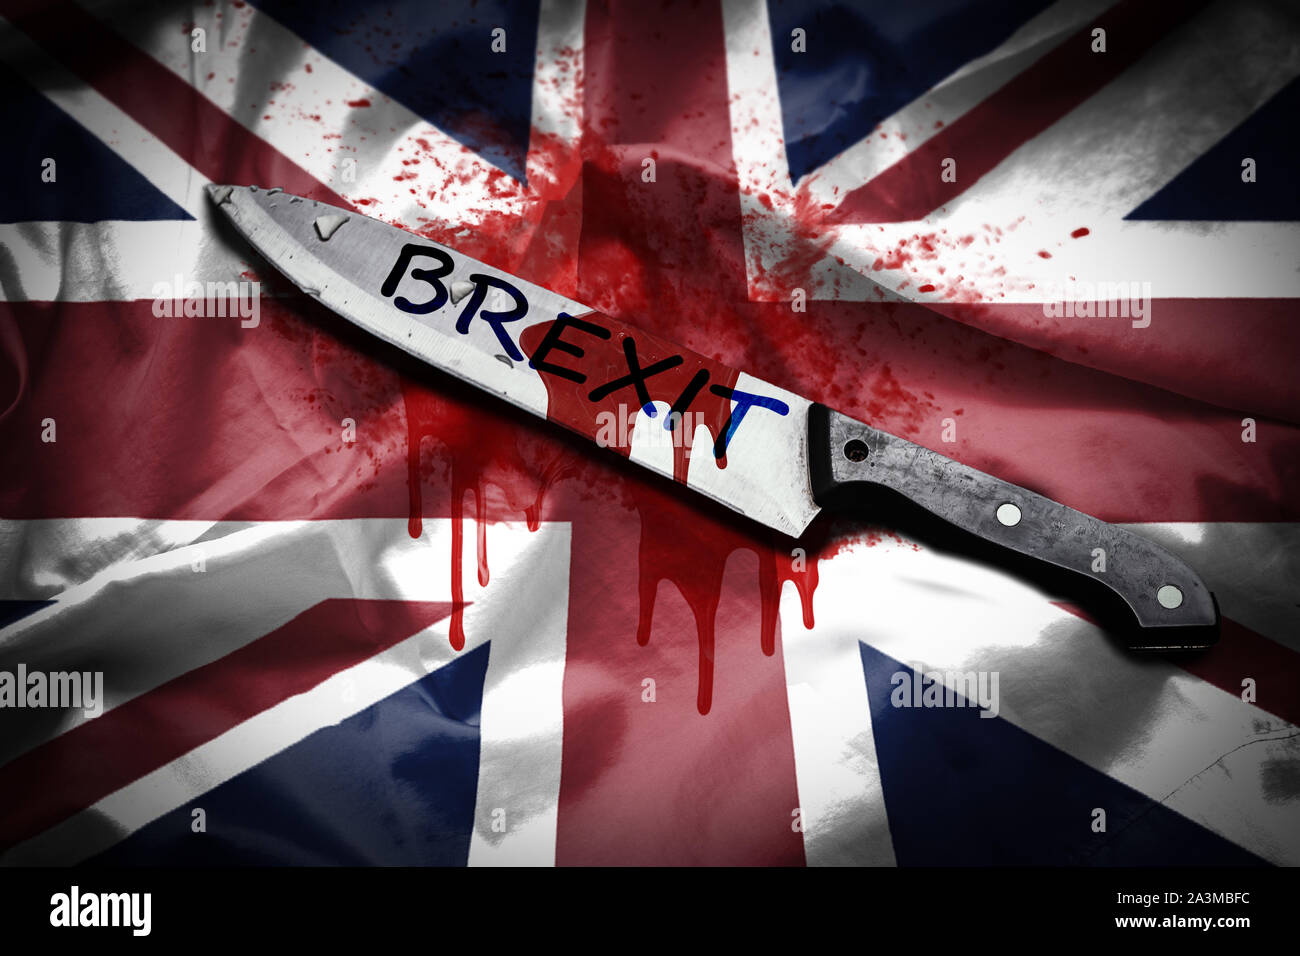 Ein langes Messer mit dem Wort Brexit mit Blut befleckt, platziert auf Großbritannien Flagge mit Blut vergossen, Brexit Konzept Stockfoto